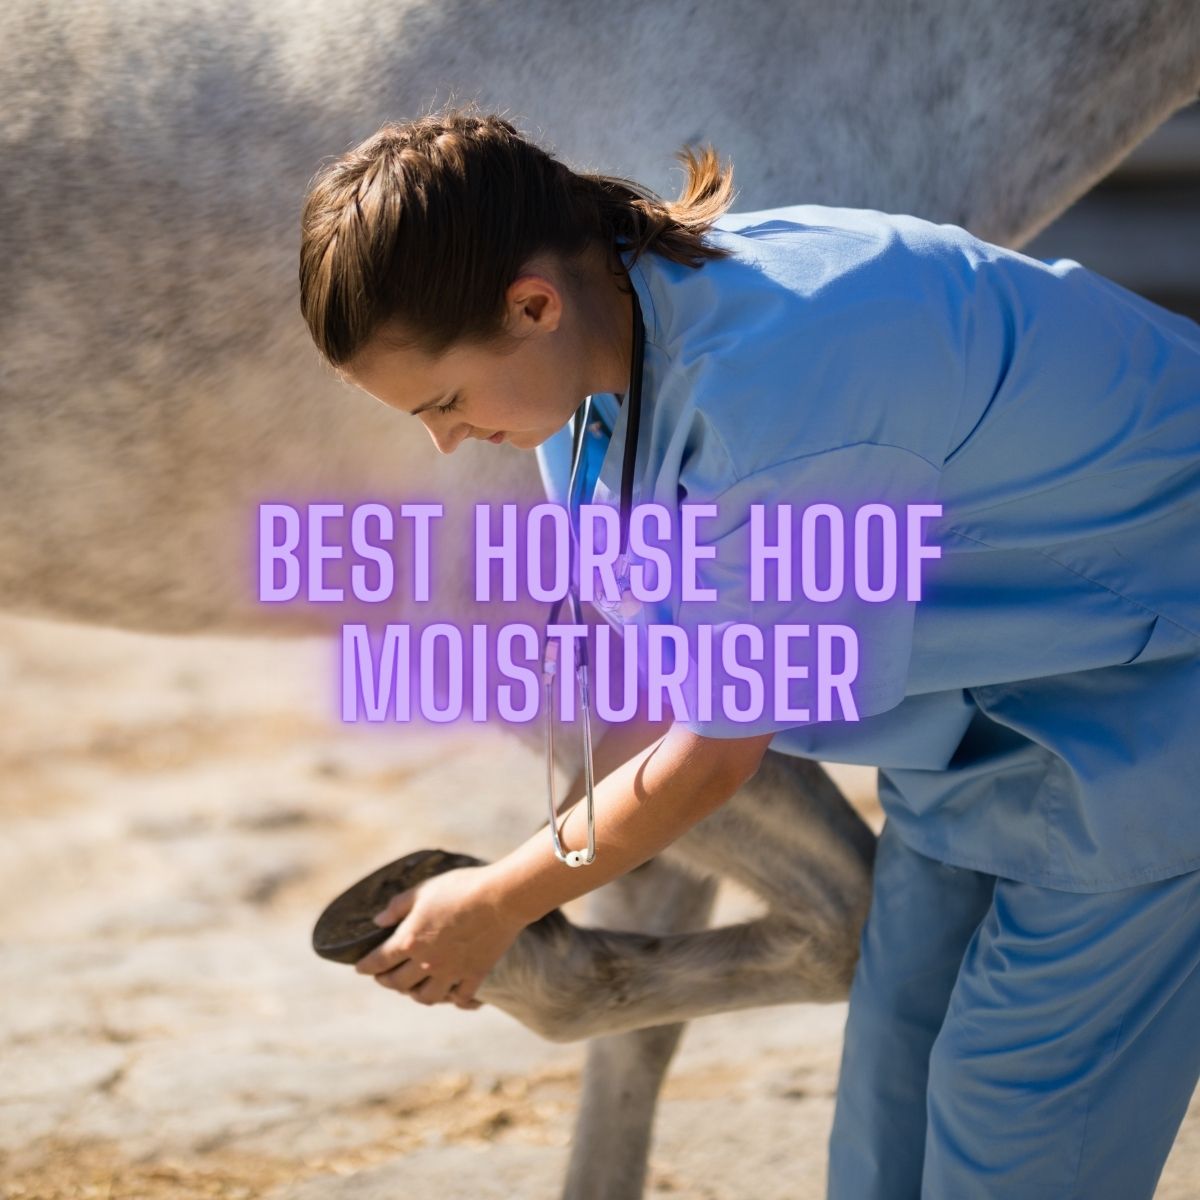 Best Horse Hoof Moisturiser: Expert Recommendations for 2023